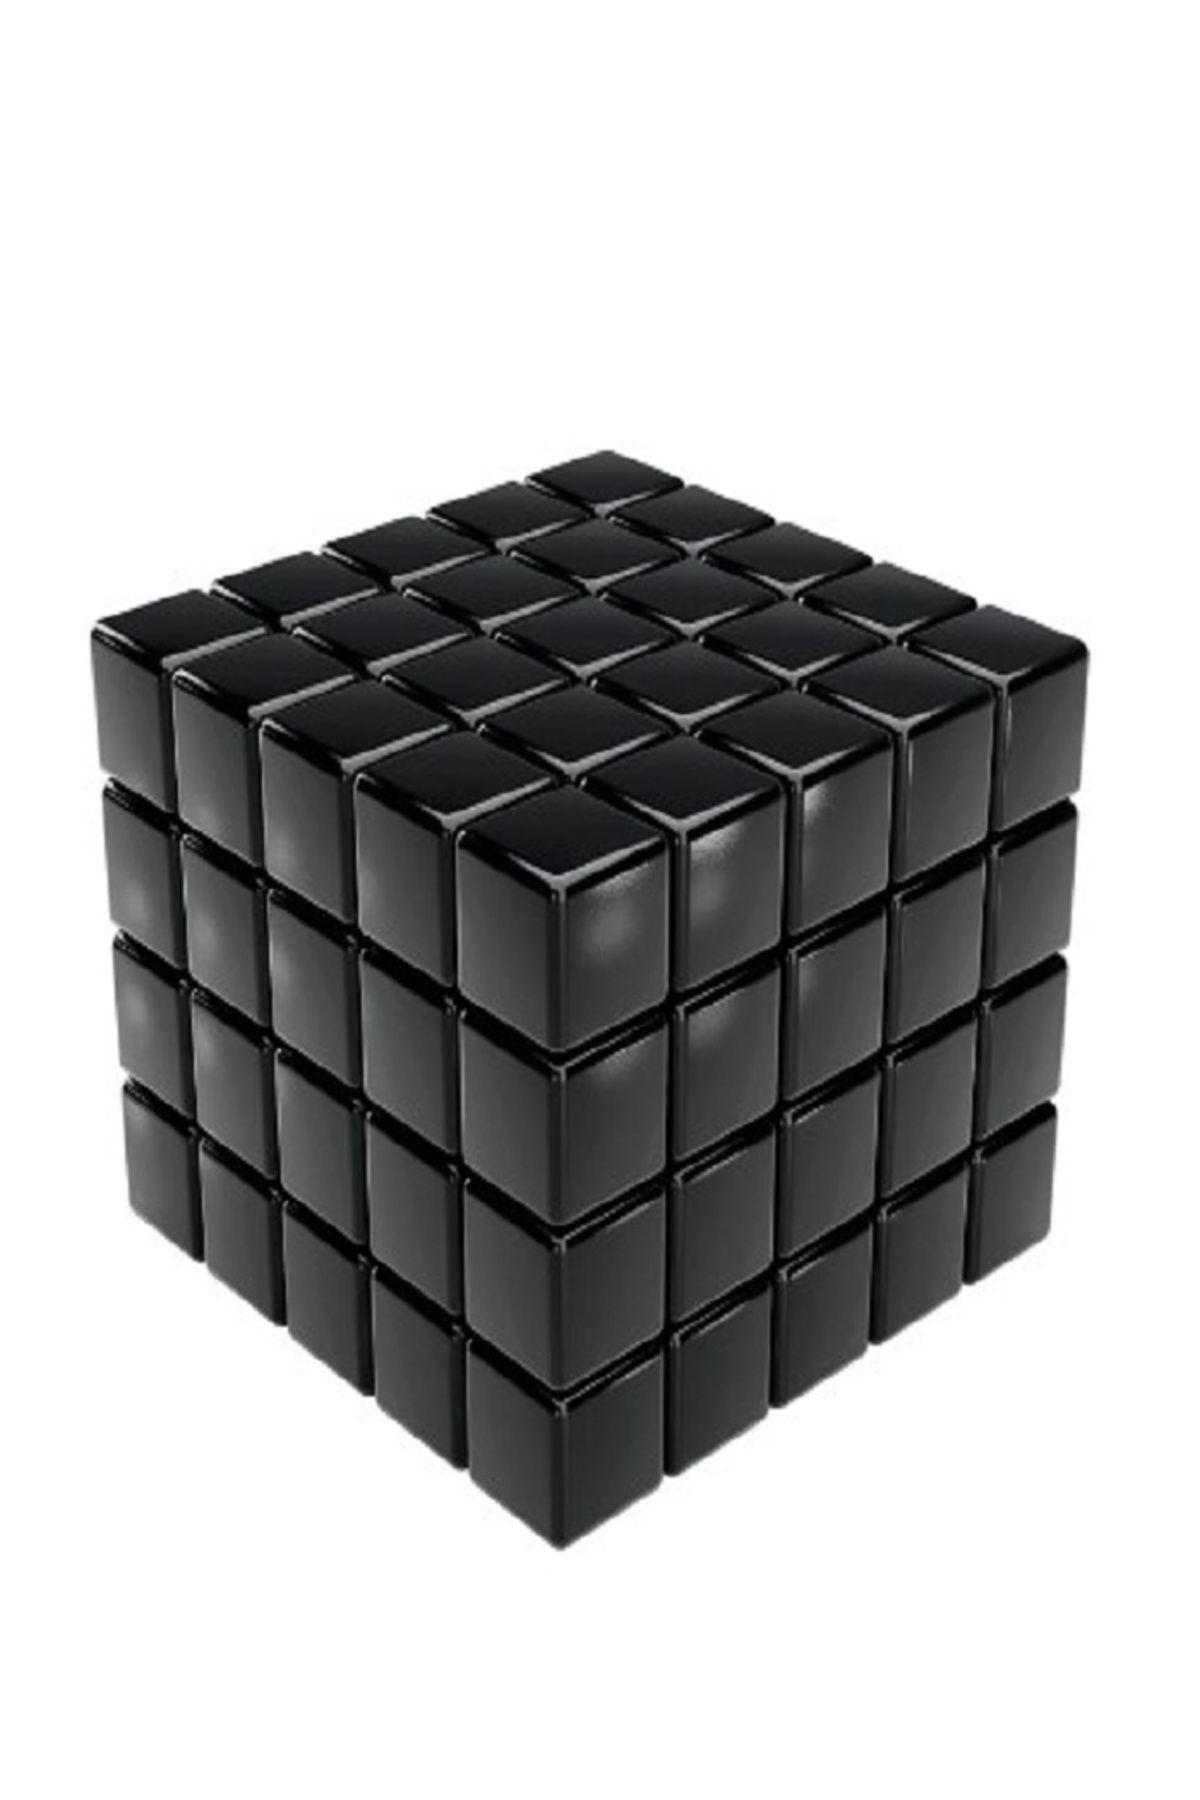 RICHIE Neocube siyah küp mıknatıs stres oyunu magnetik küp eğitici el beceri oyunu 120 adet